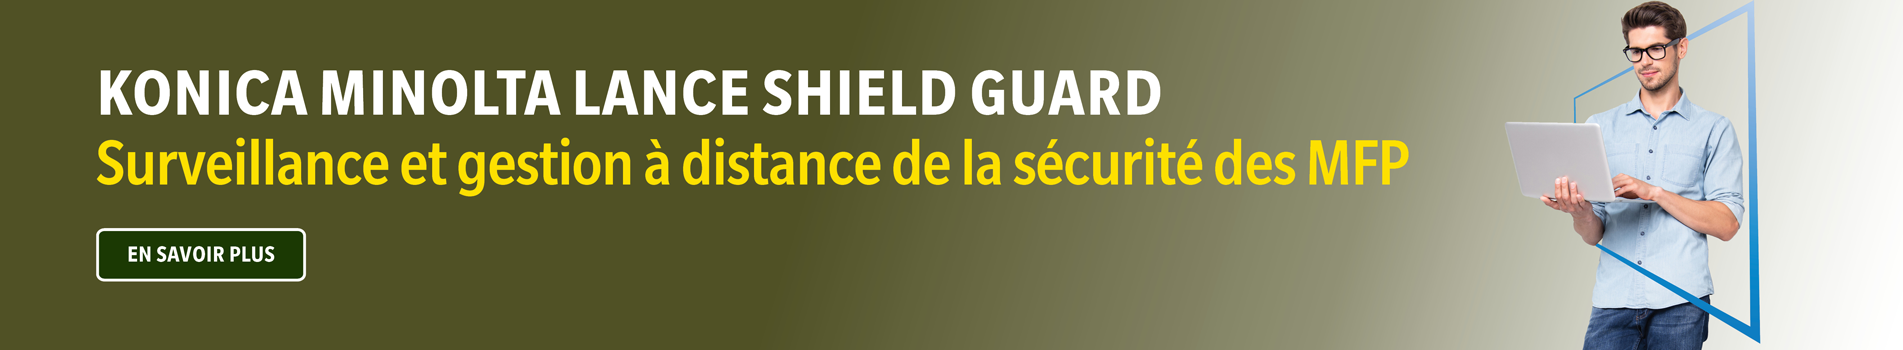 Konica Minolta Lance Shield Guard Surveillance et gestion a distance de la securite des MFP